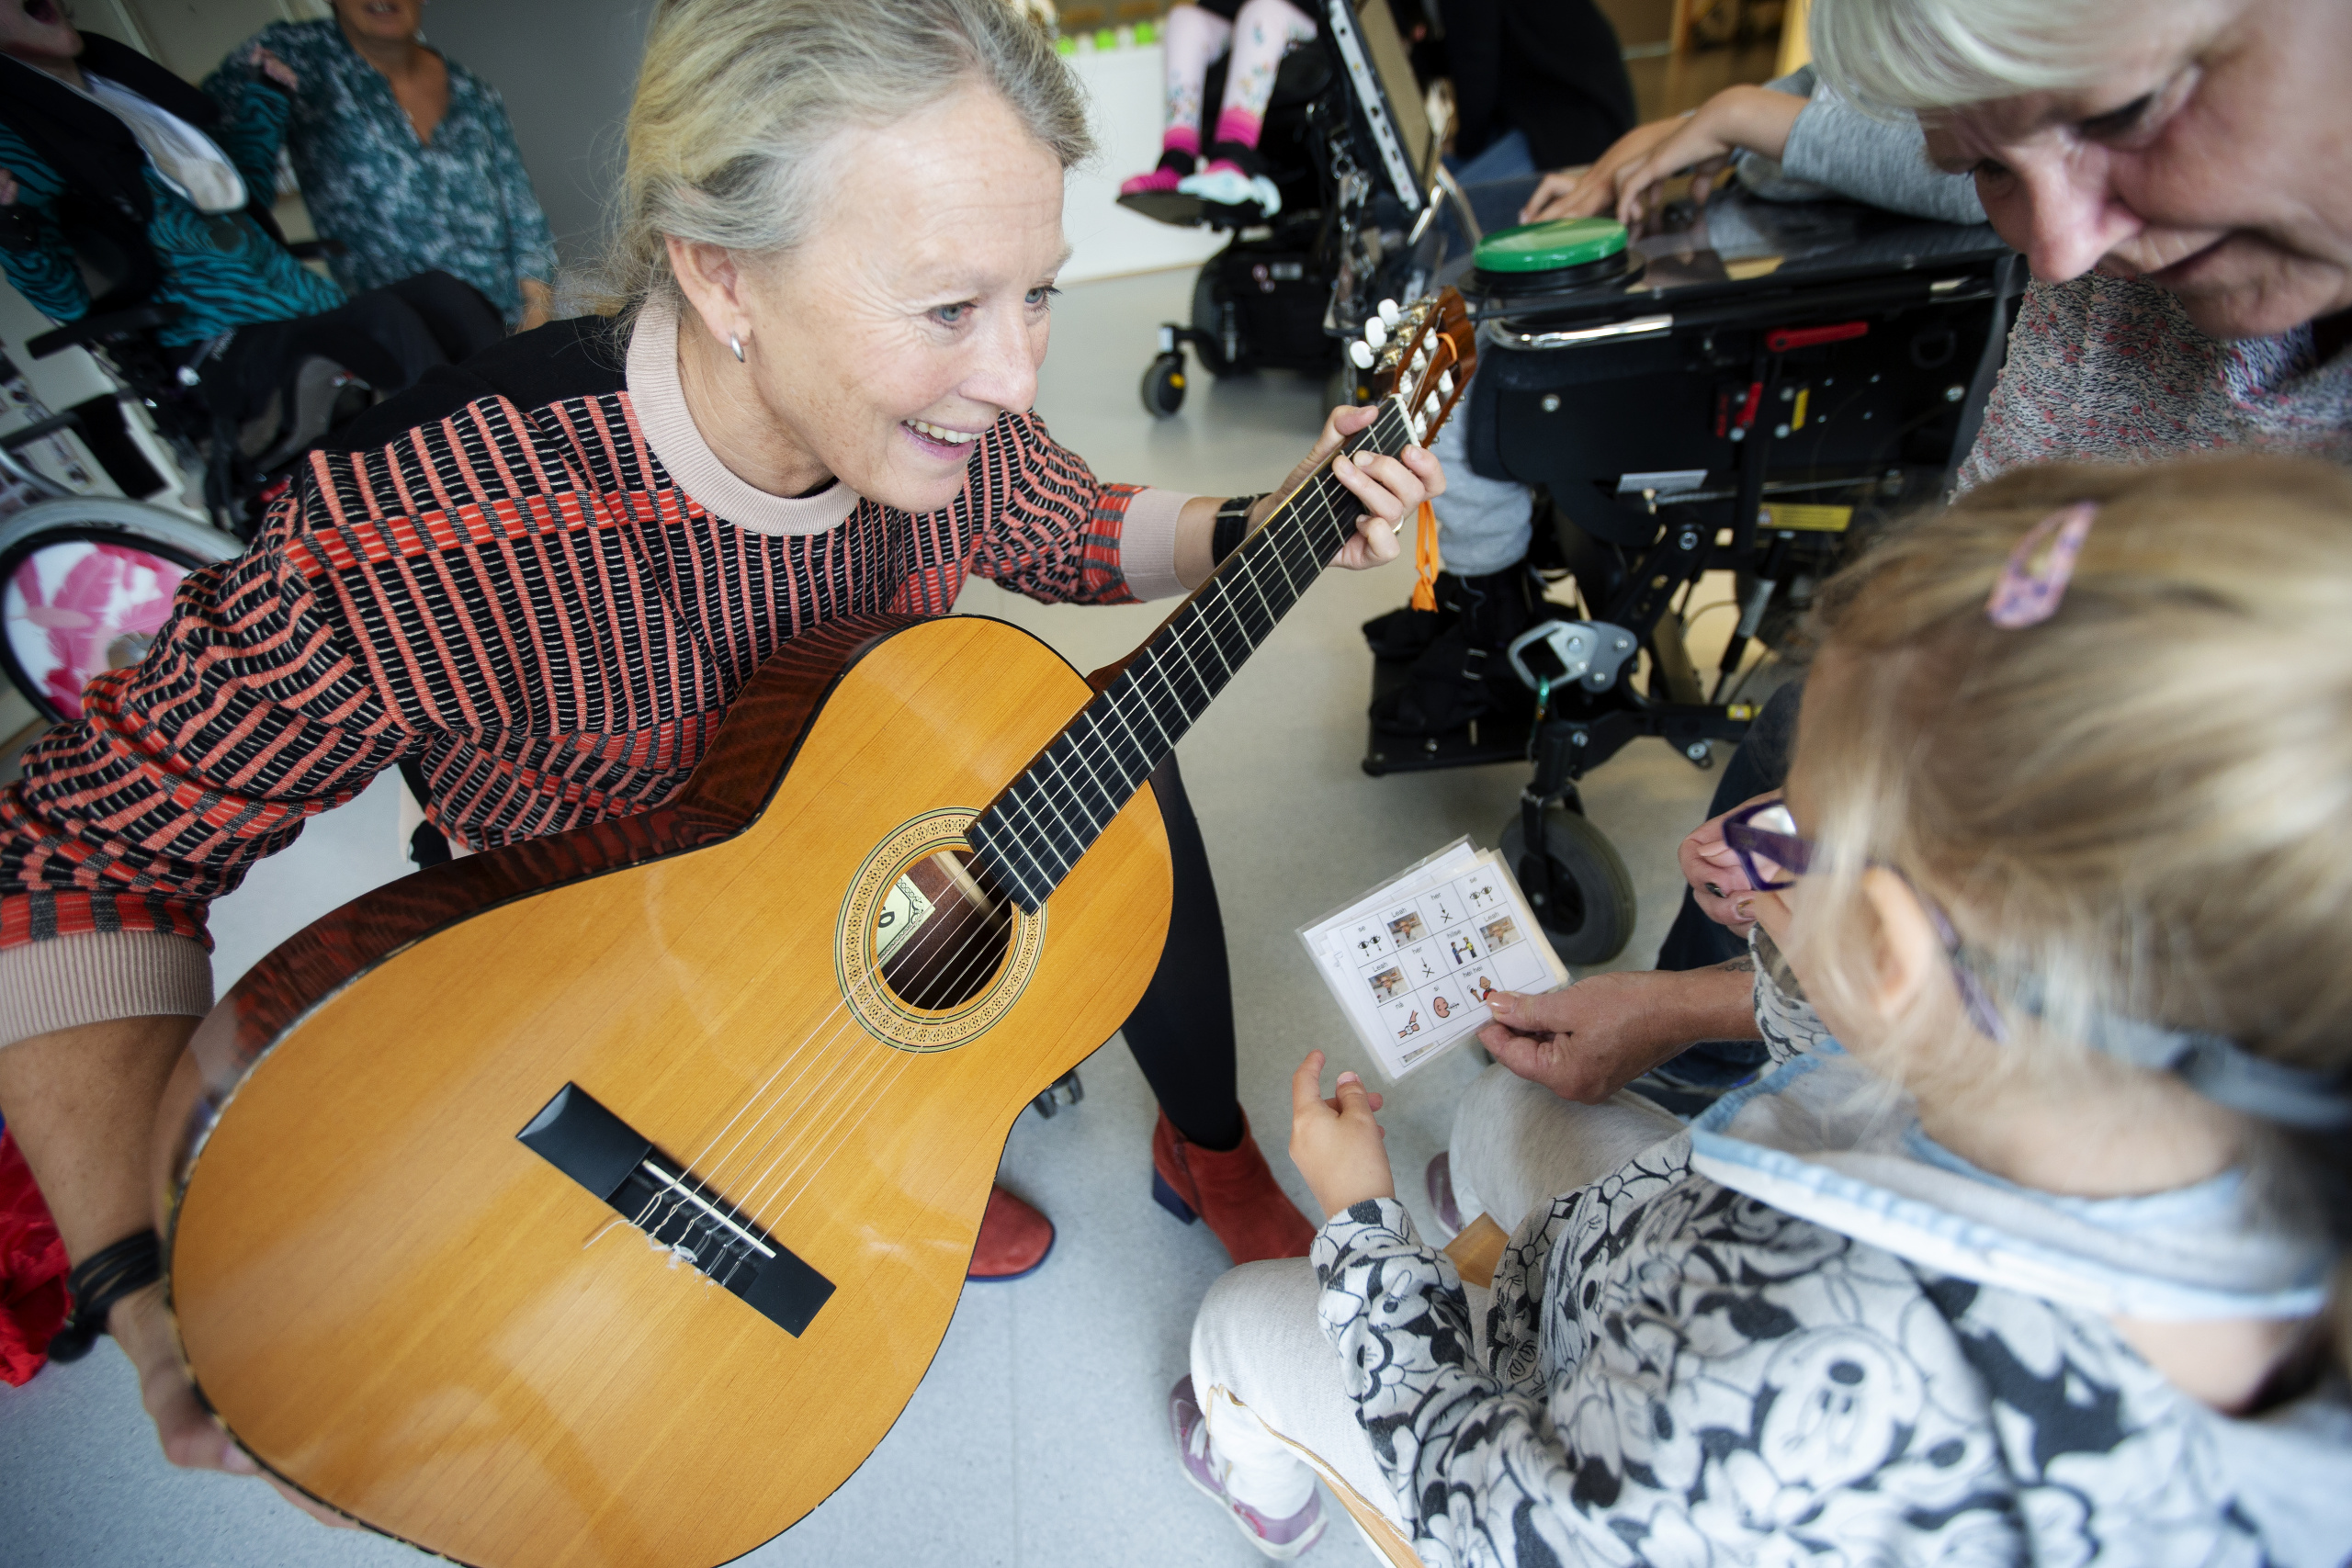 Kvinne med gitar smiler mot barn og eldre kvinne. Foto.